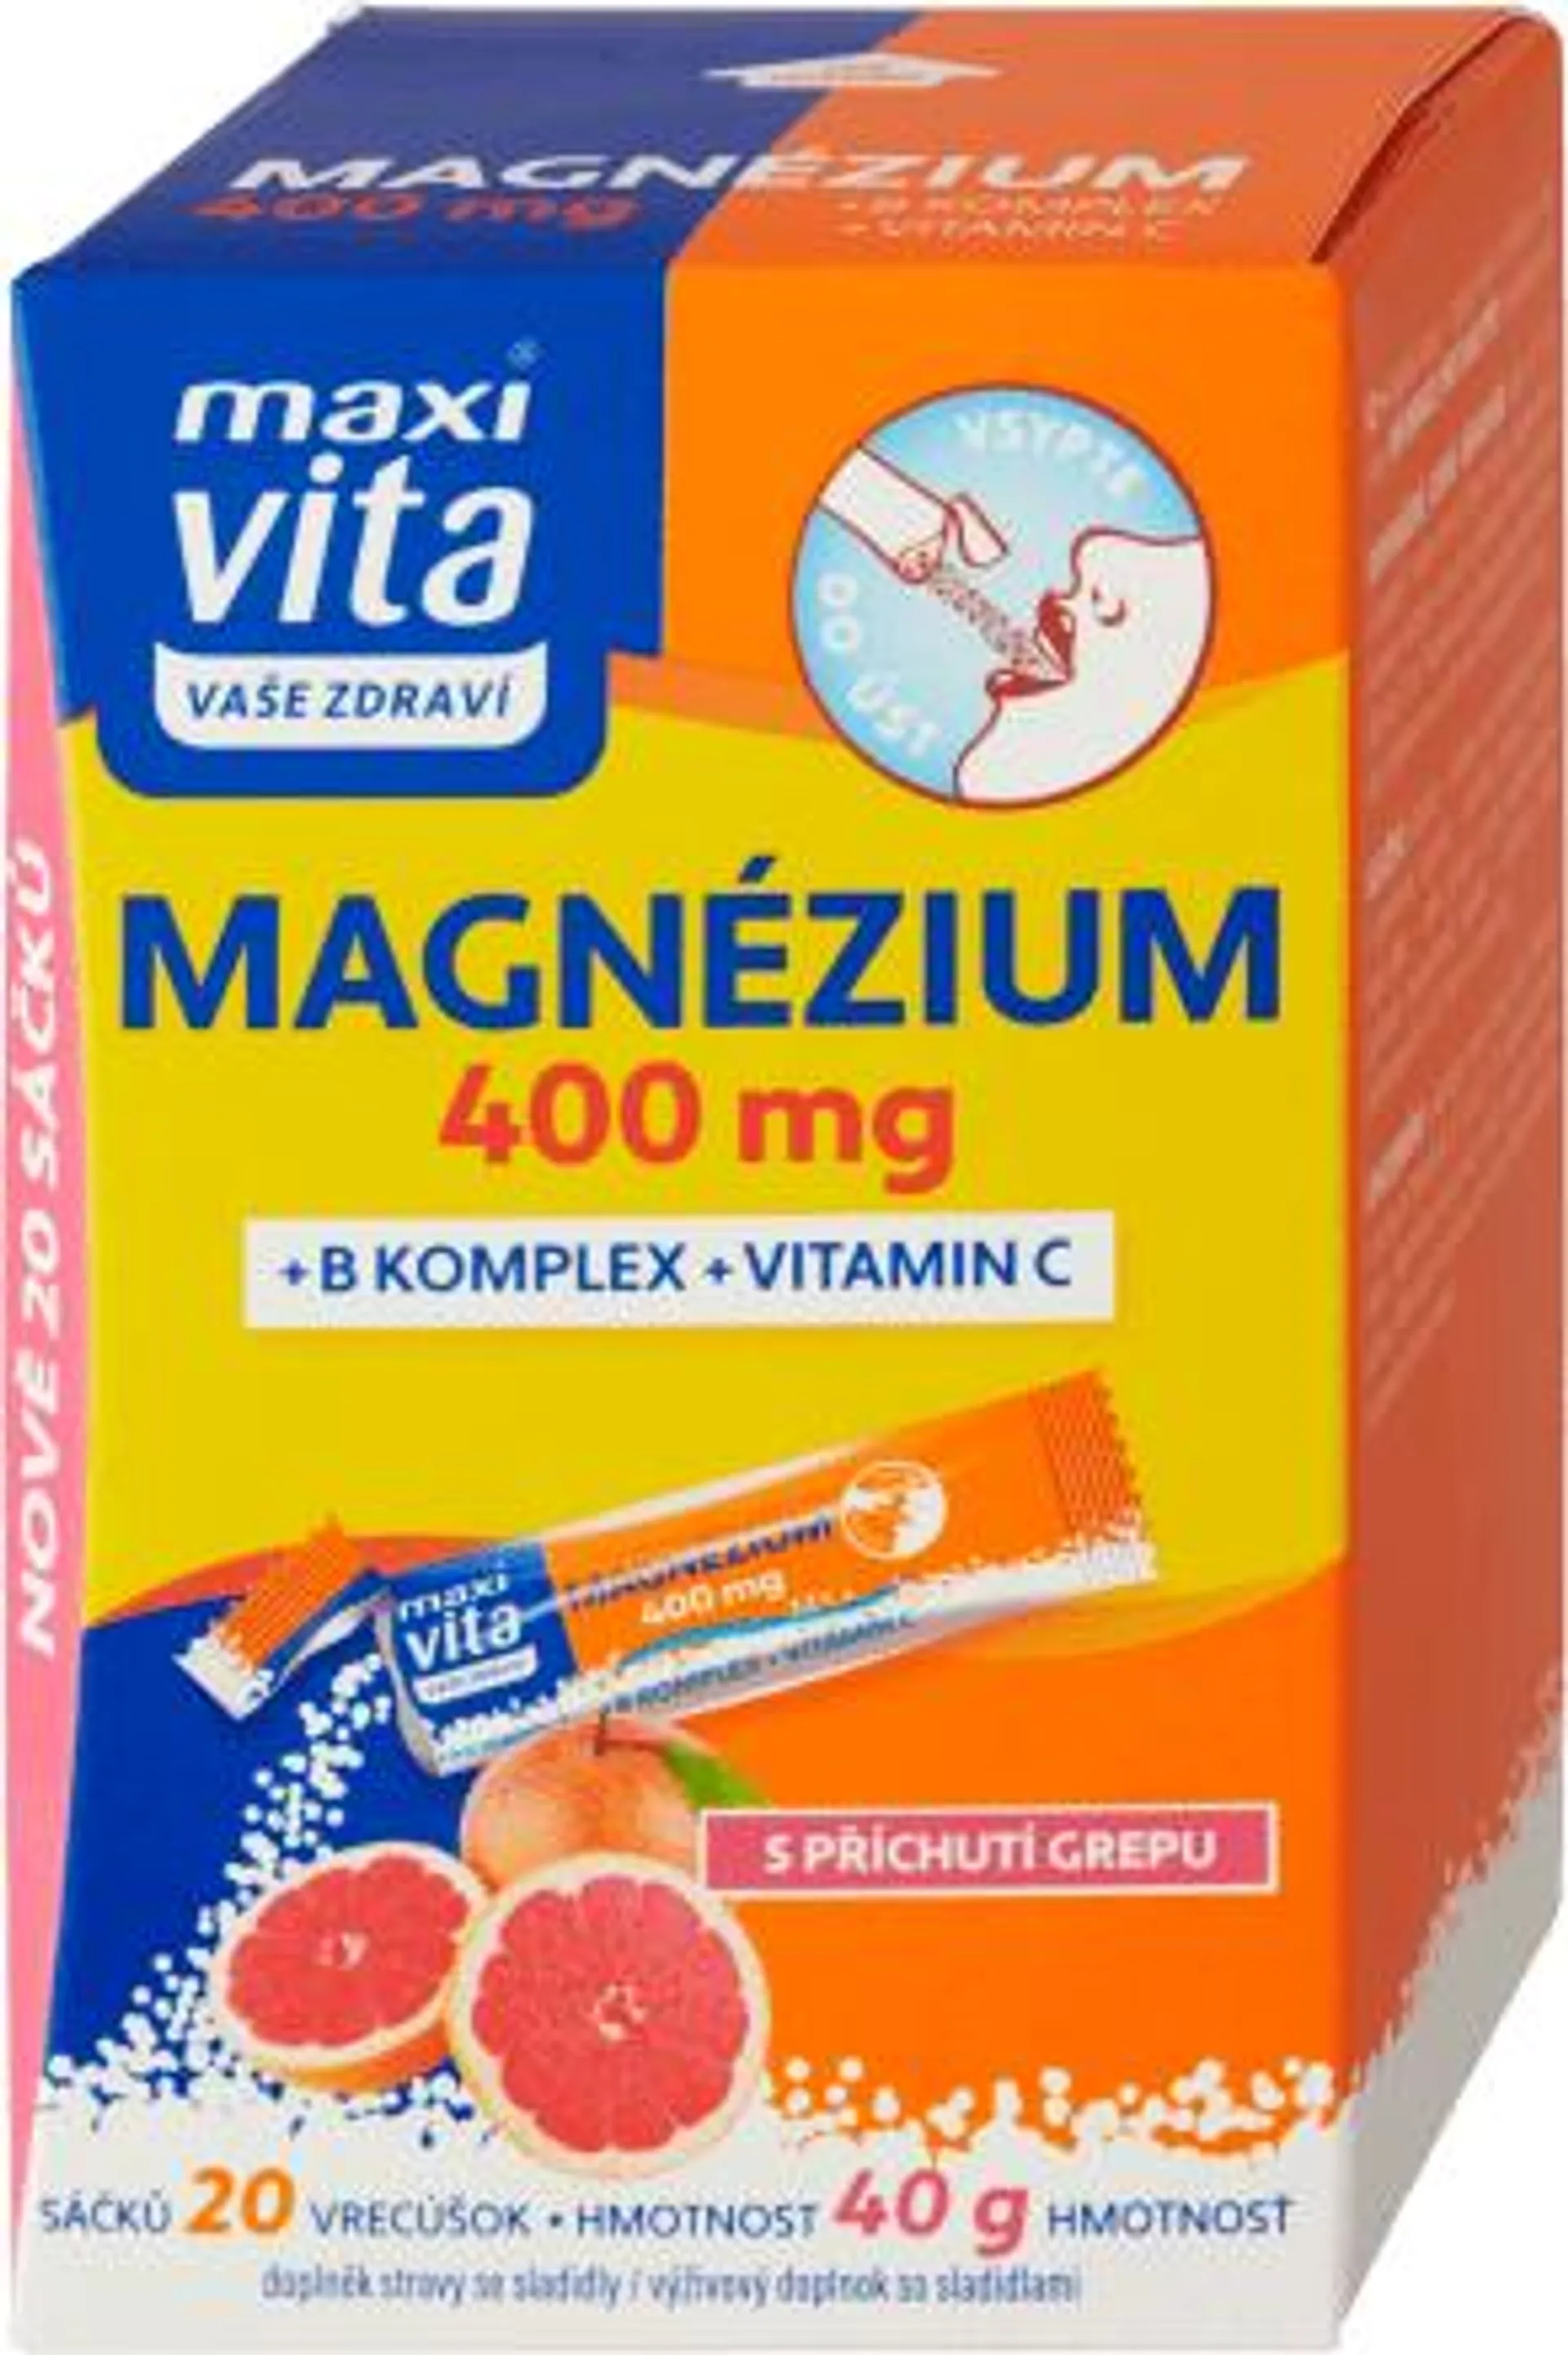 magnézium 400 mg + B komplex + vitamin C, 20 ks